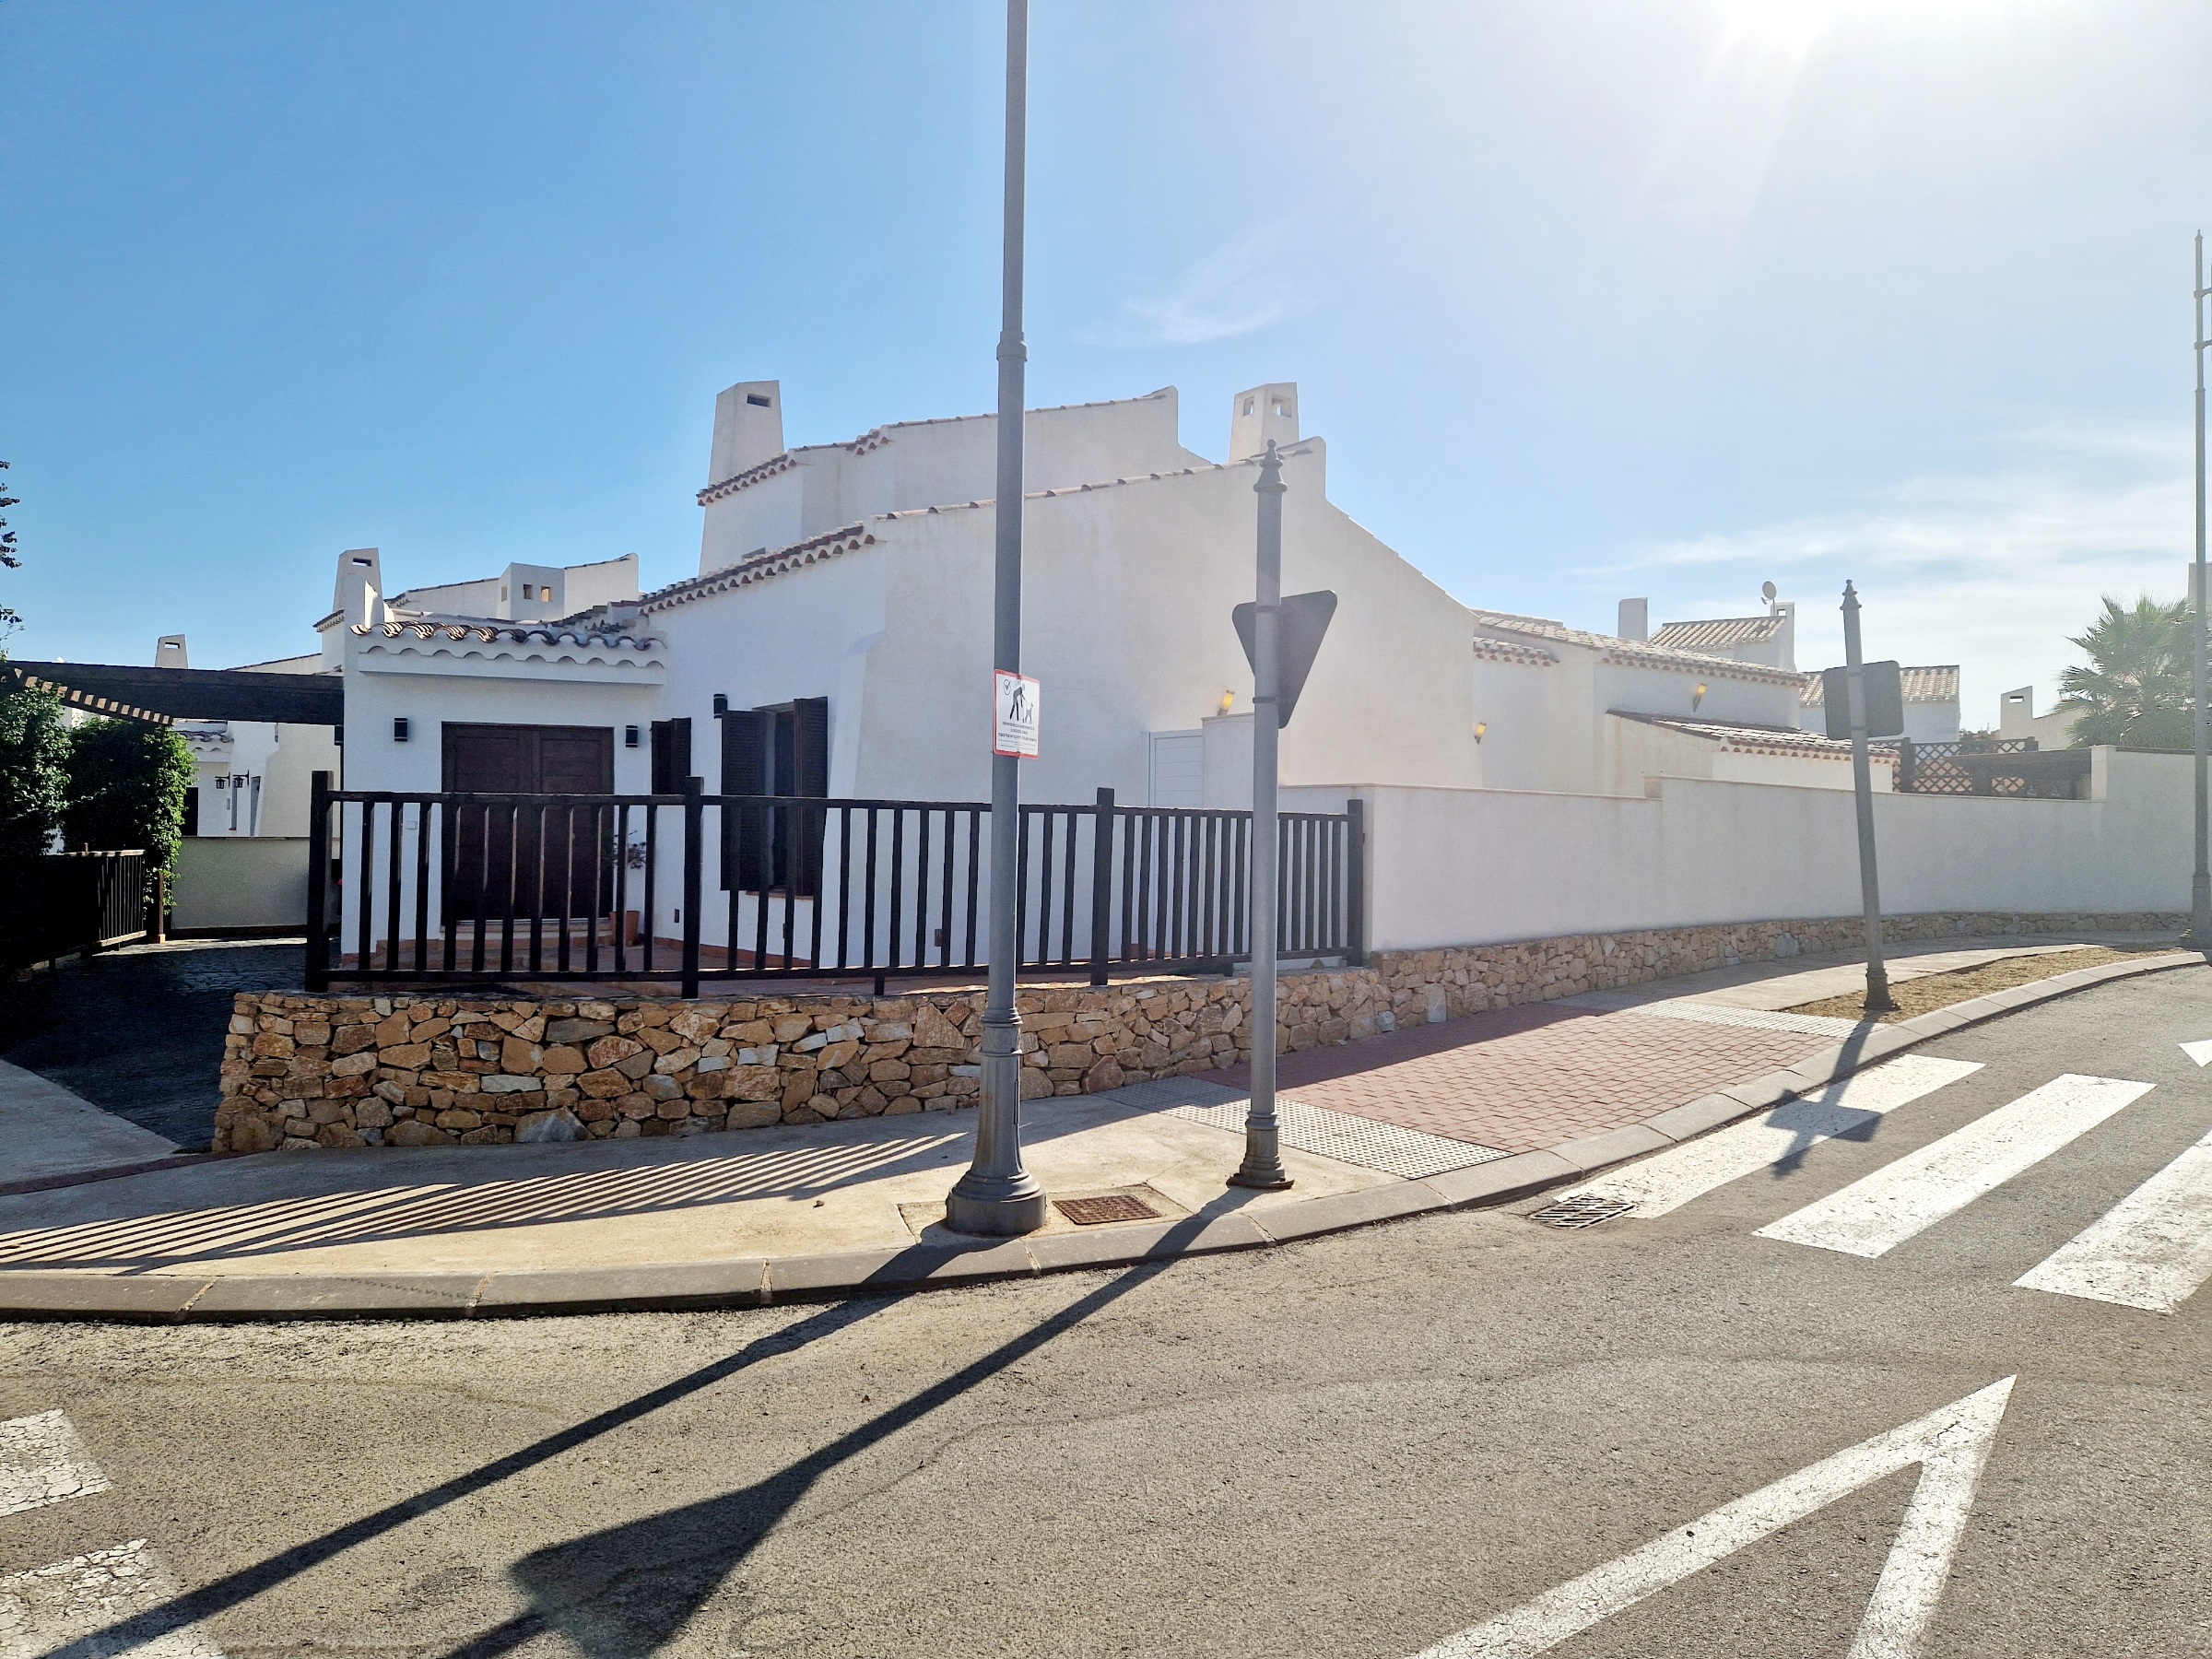 4 Bed 2 Bath Alcor Villa for sale – El Valle Golf Resort – Murcia